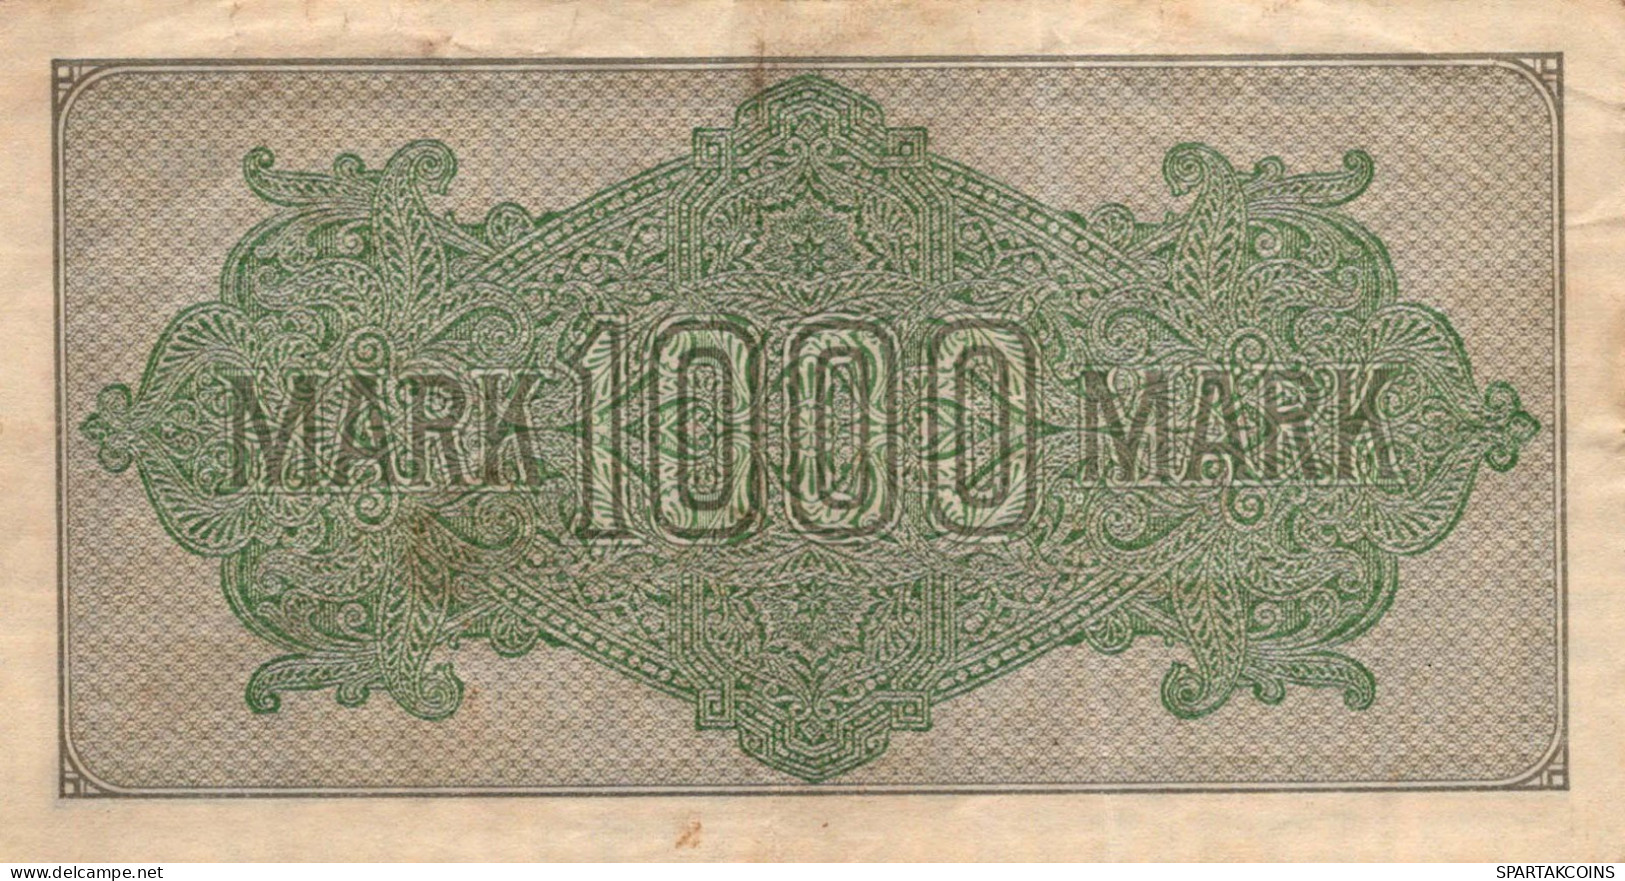 1000 MARK 1922 Stadt BERLIN DEUTSCHLAND Papiergeld Banknote #PL389 - [11] Emissioni Locali